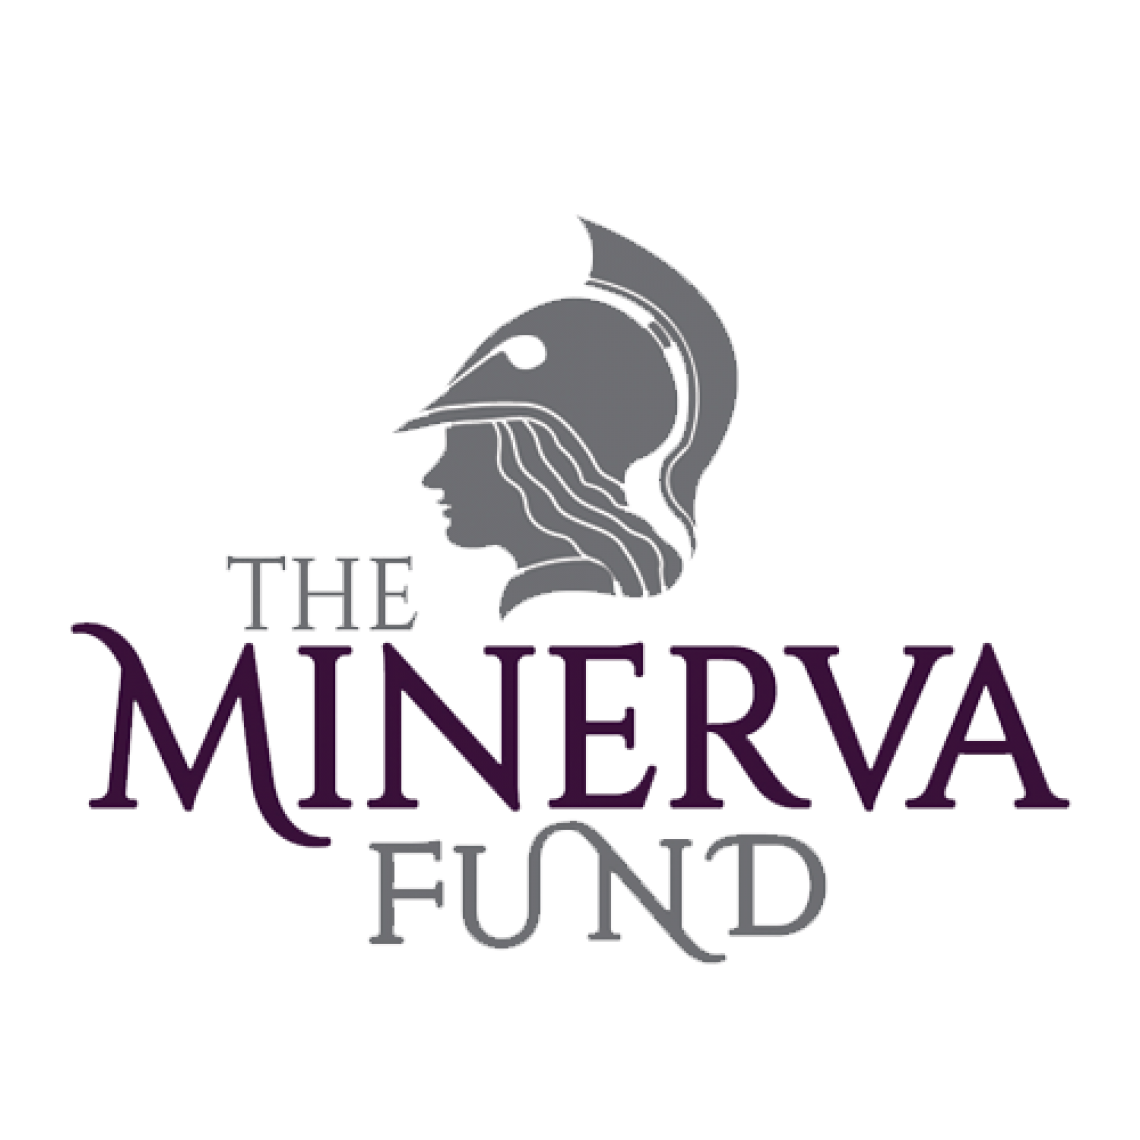 The Minerva Fund logo